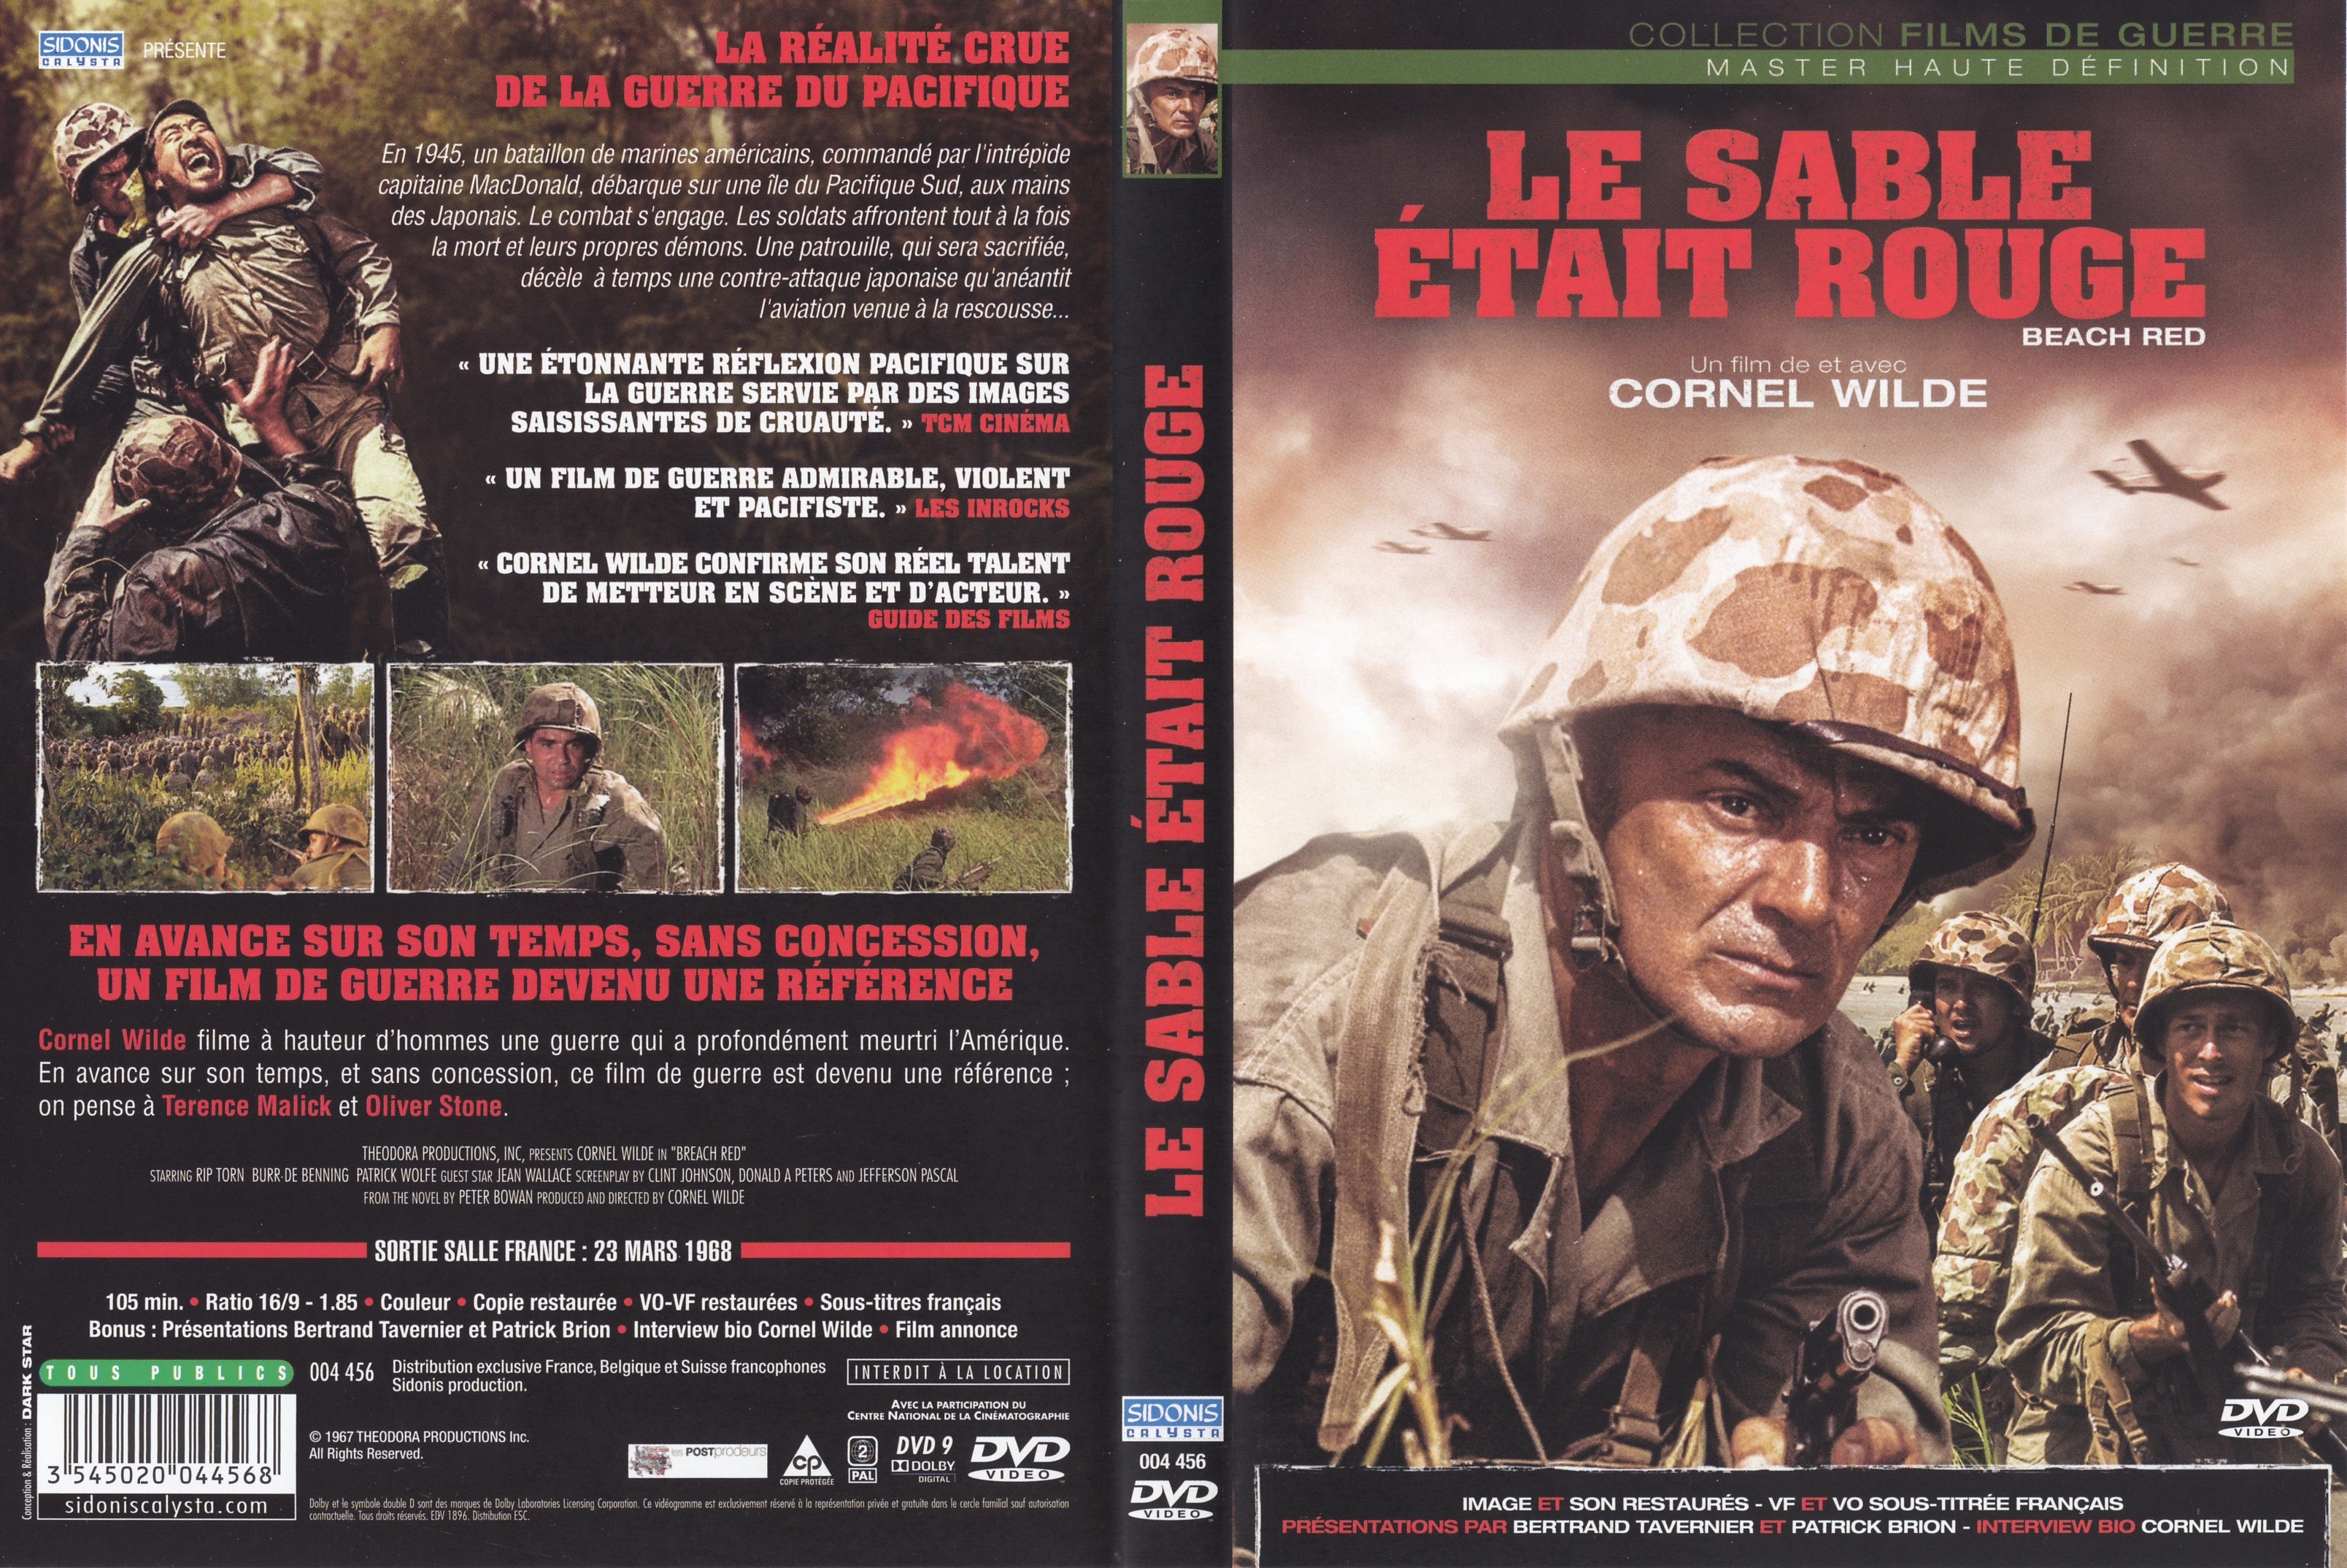 Jaquette DVD Le Sable tait rouge